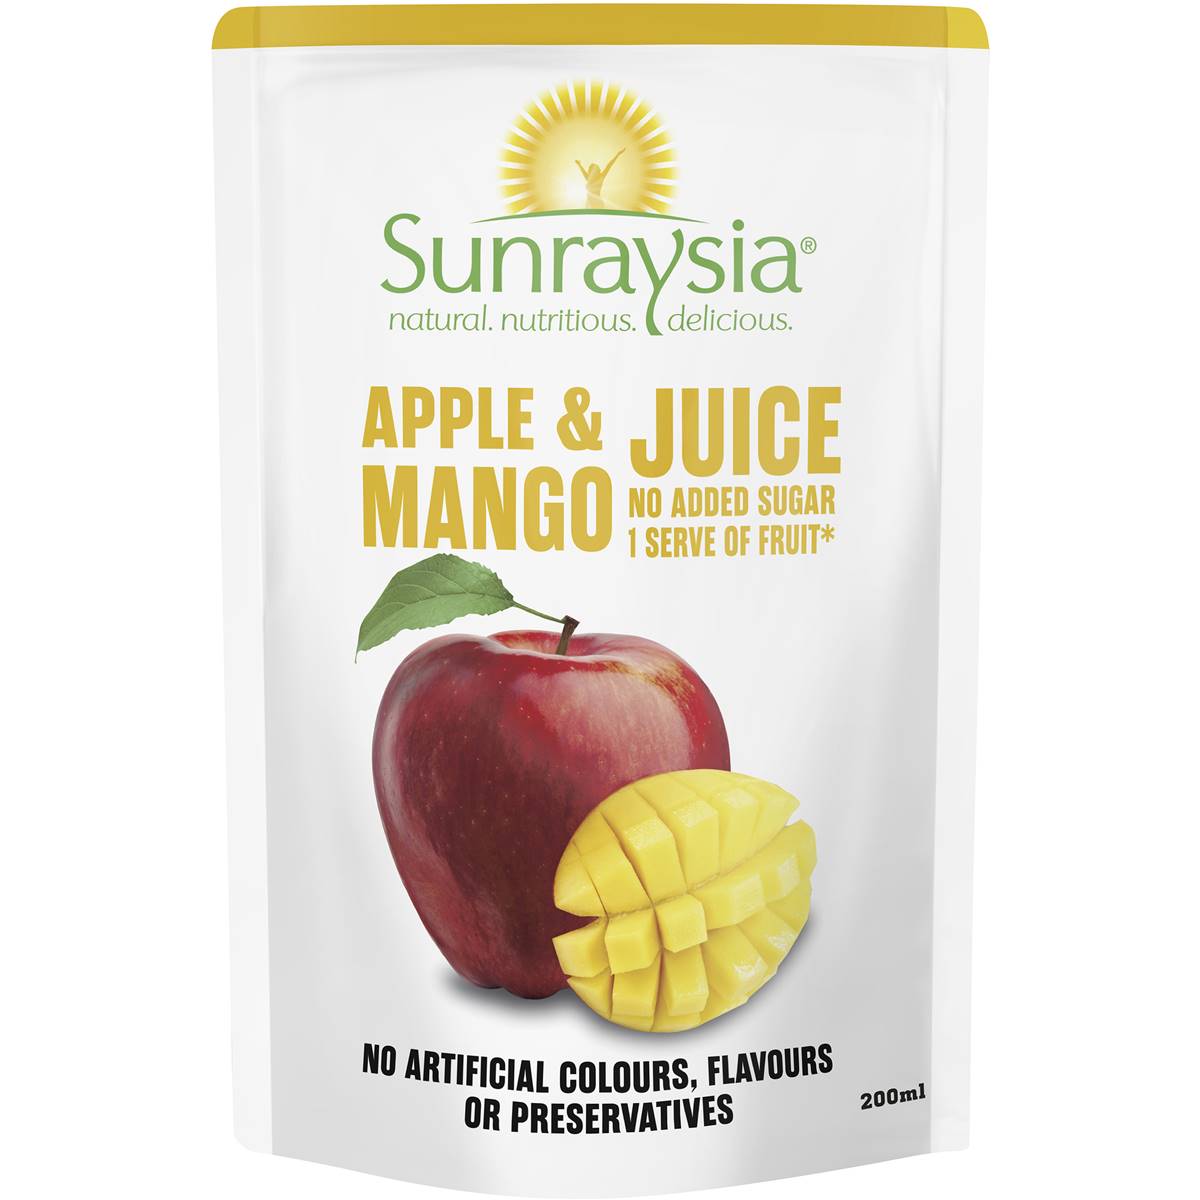 Calories in Sunraysia Apple & Mango Juice